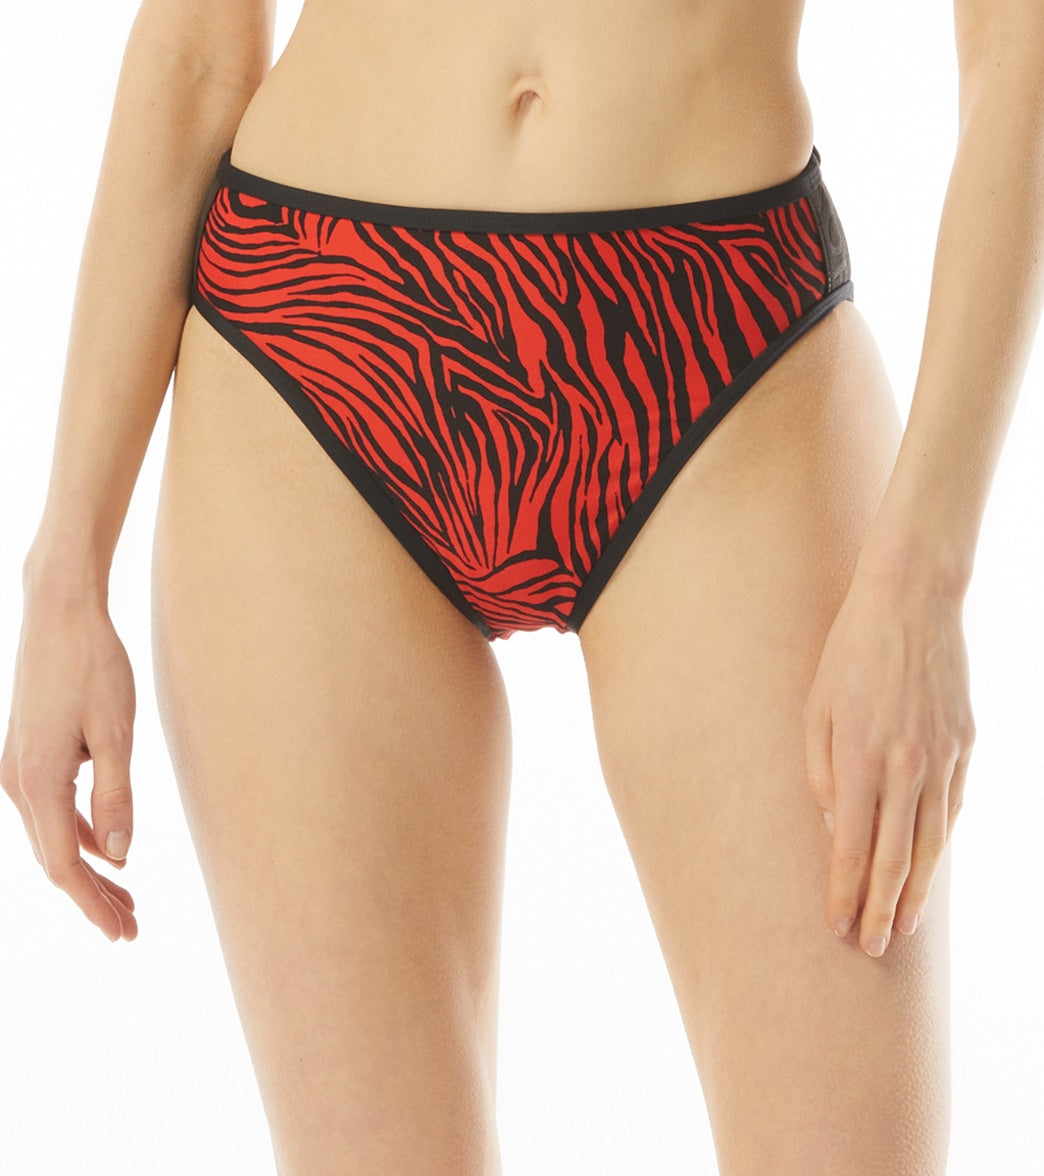 Michael Kors Womens Zebra High Leg Bikini Bottom